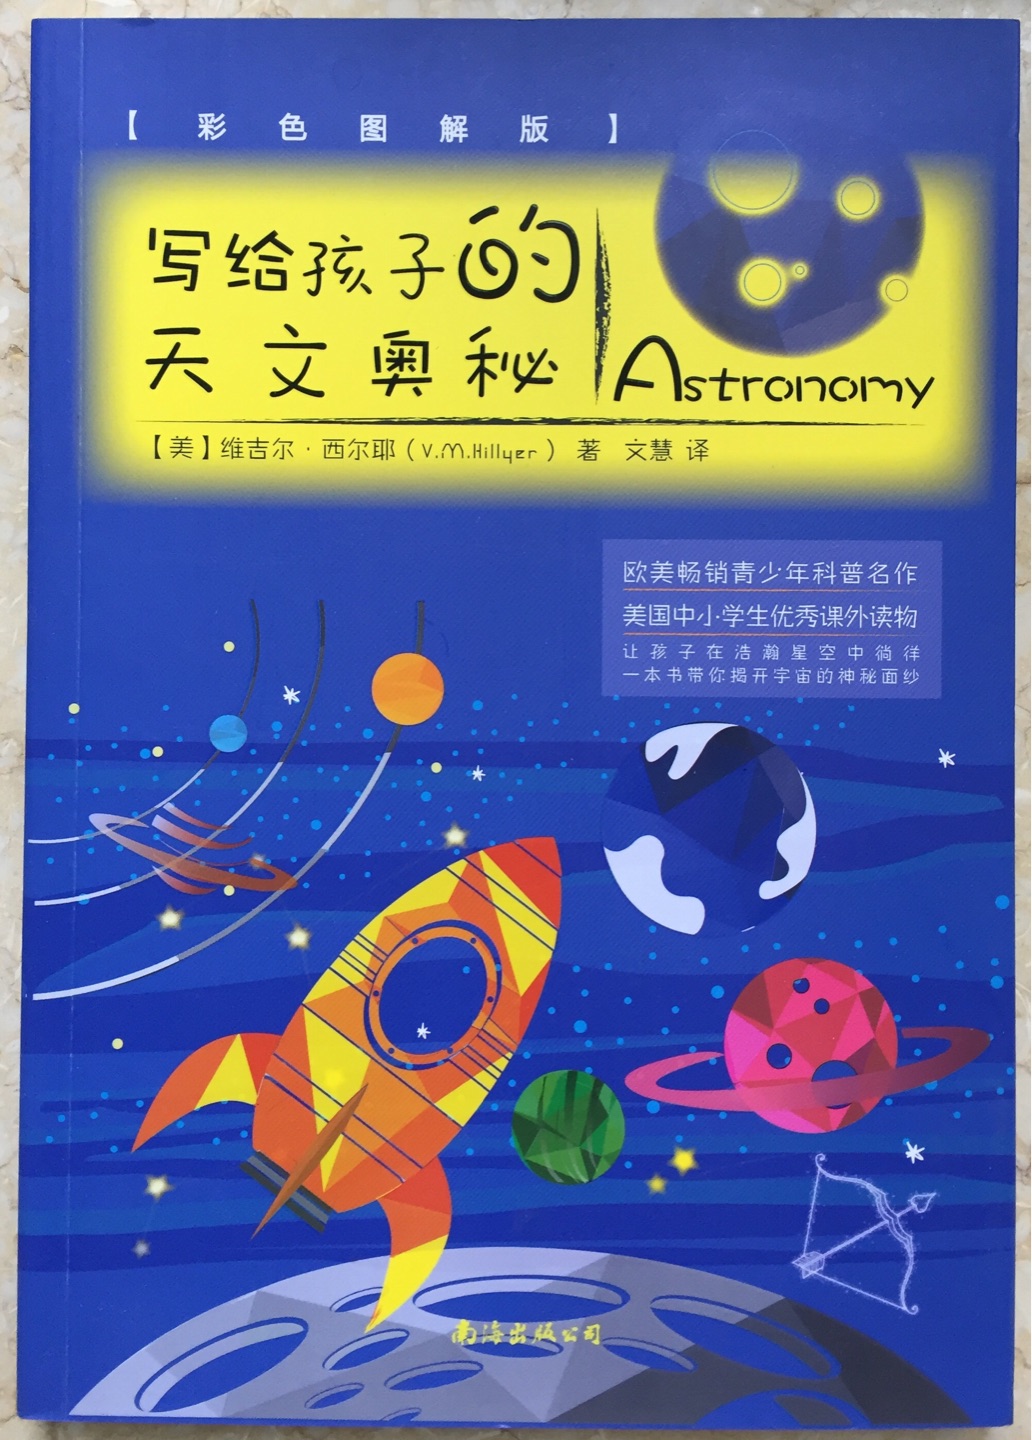 色彩丰富，纸质不错，没有什么味道，有趣的书本适合学生读，了解更多天文知识。